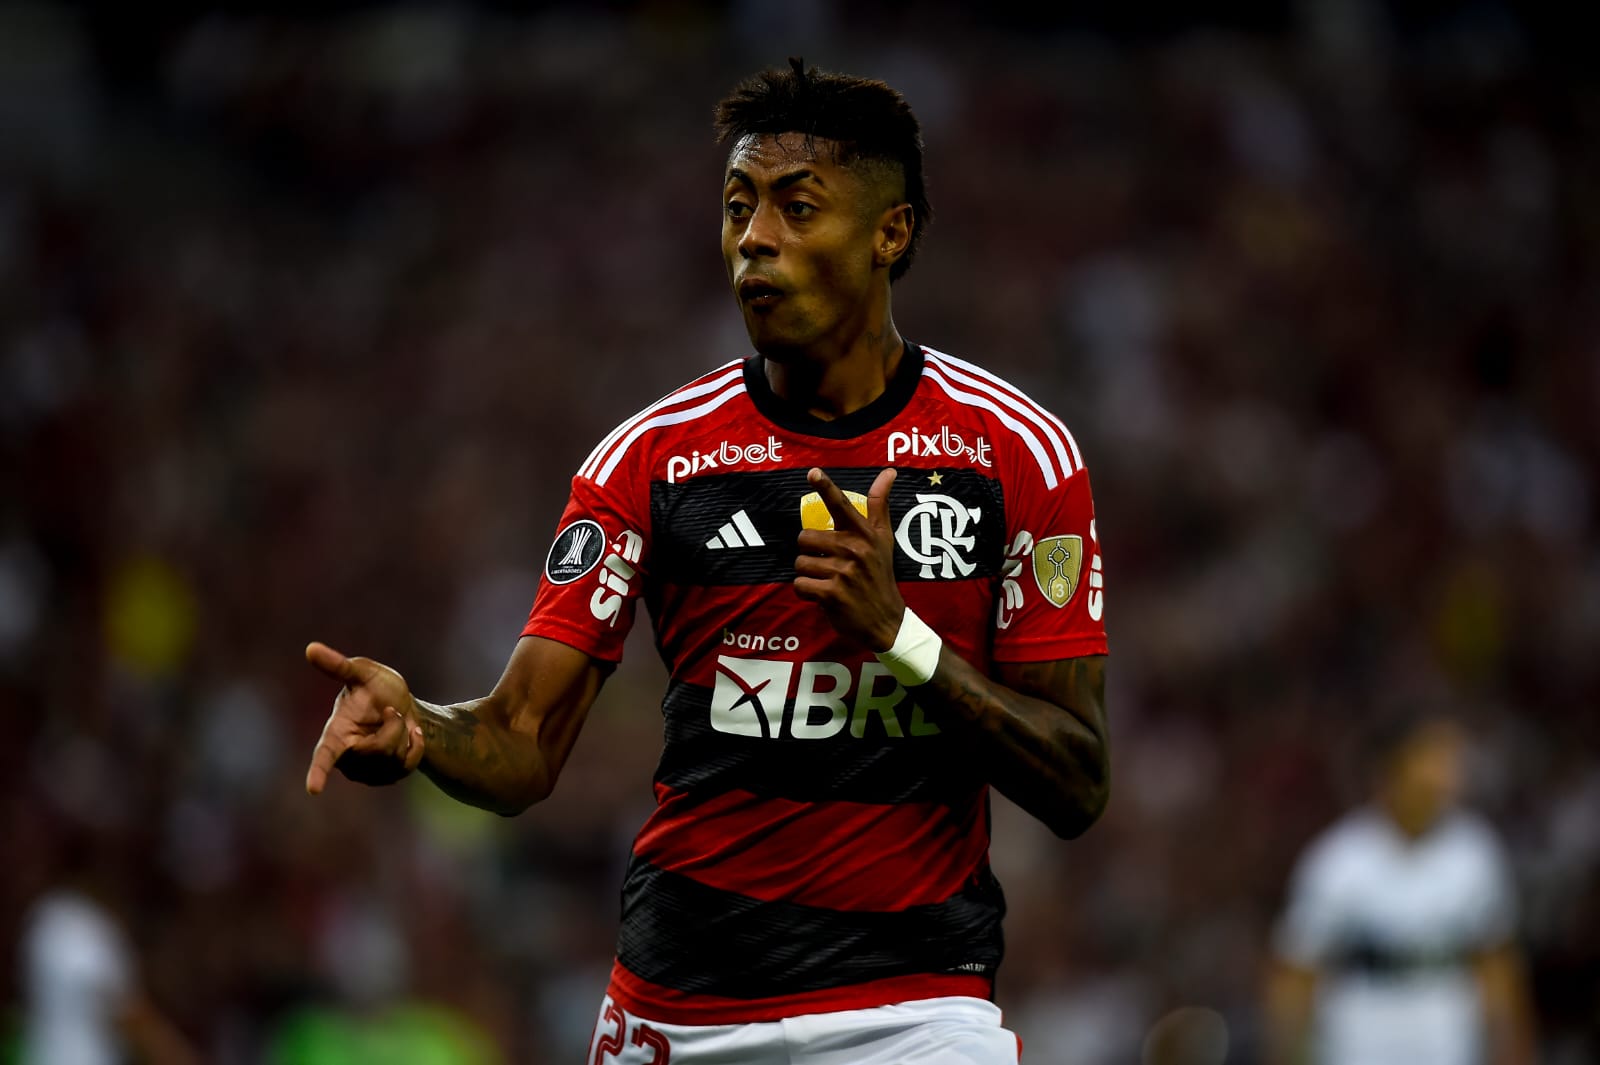 Com gol de Bruno Henrique, Flamengo vence Olimpia no jogo de